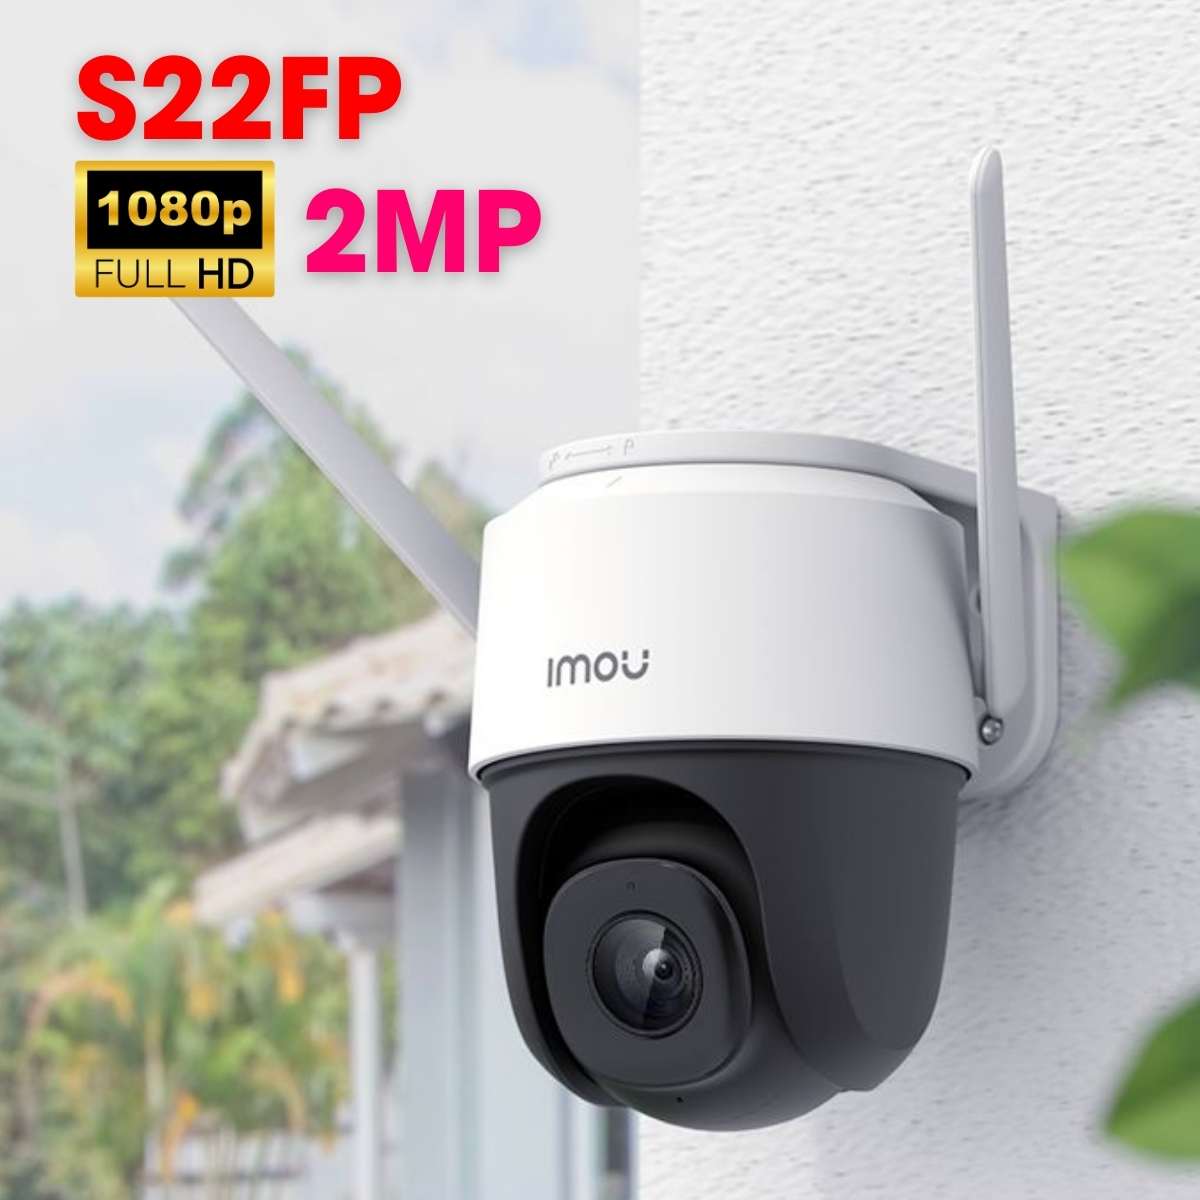 Camera ngoài trời 360 IMOU IPC-S22FP 2MP kết nối Wifi, đàm thoại 2 chiều, tích hợp wifi Hotspot